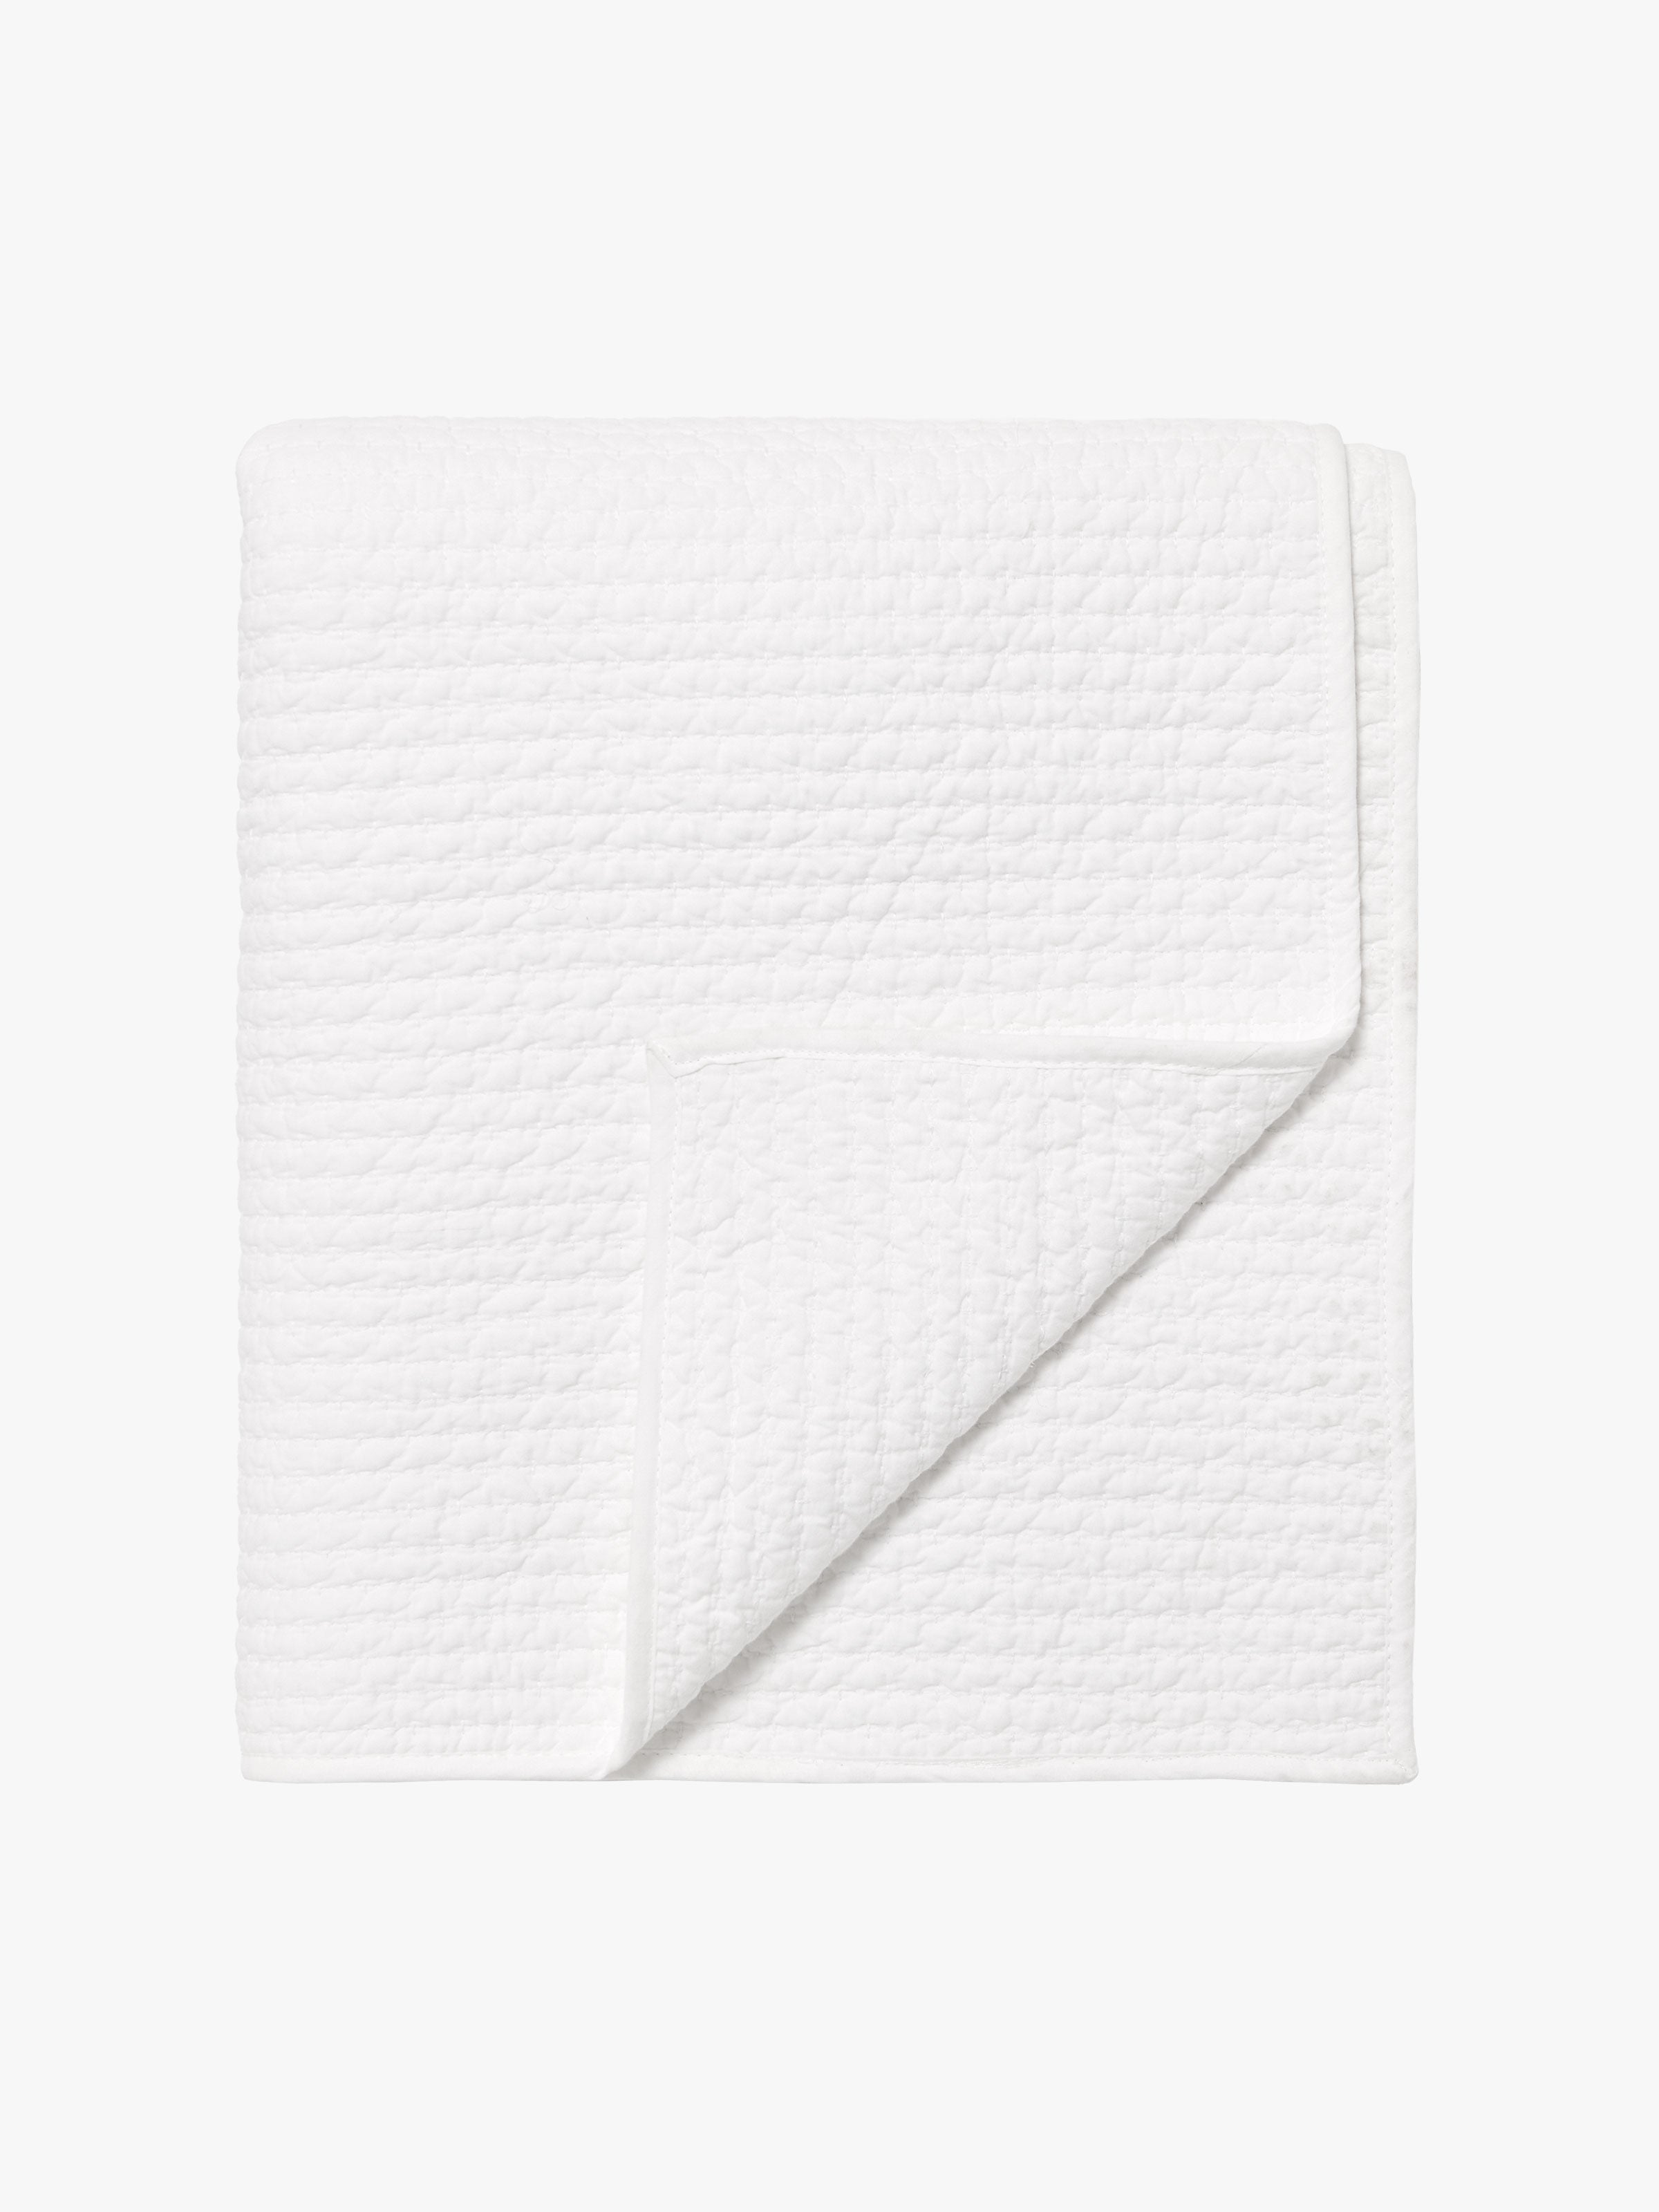 Aspen White Pure Cotton Quilt